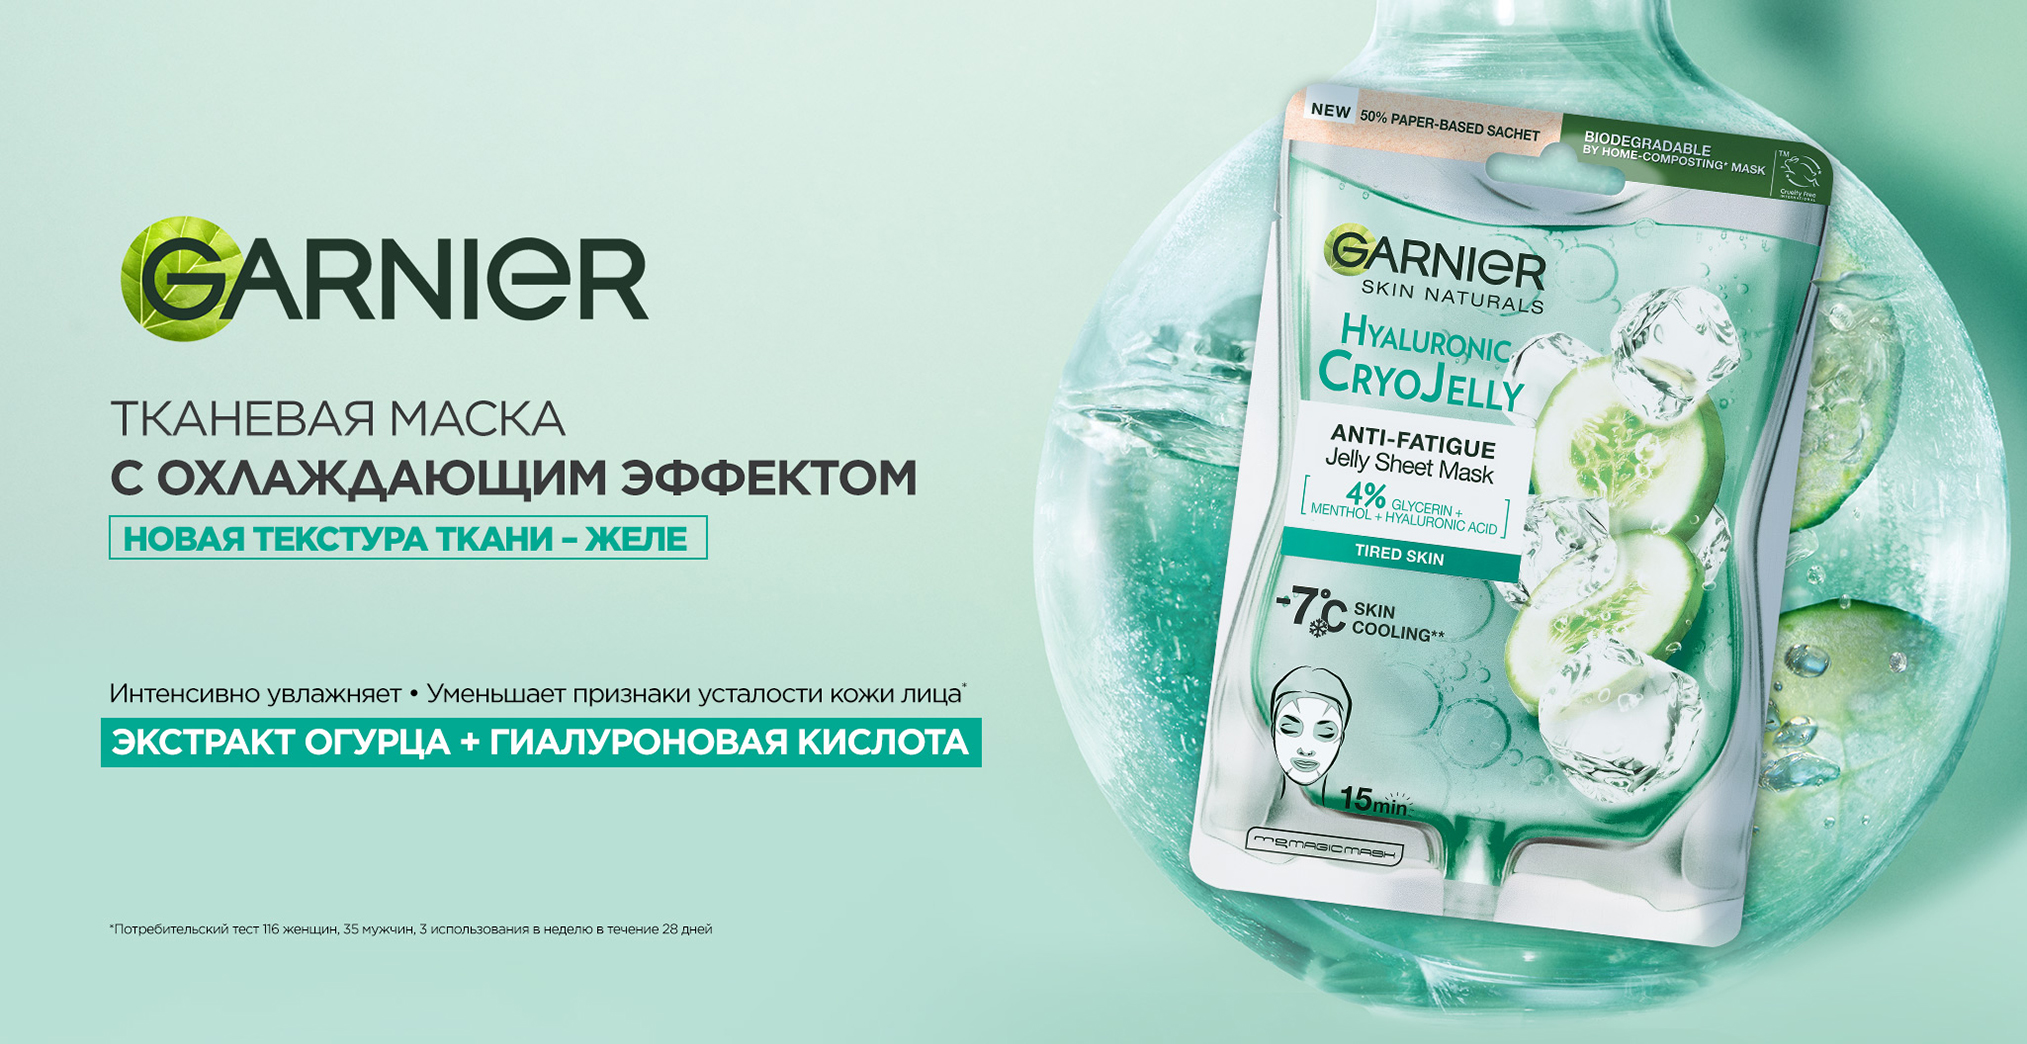 Garnier Skin Naturals Hyaluronic Cryo Jelly Sheet Mask